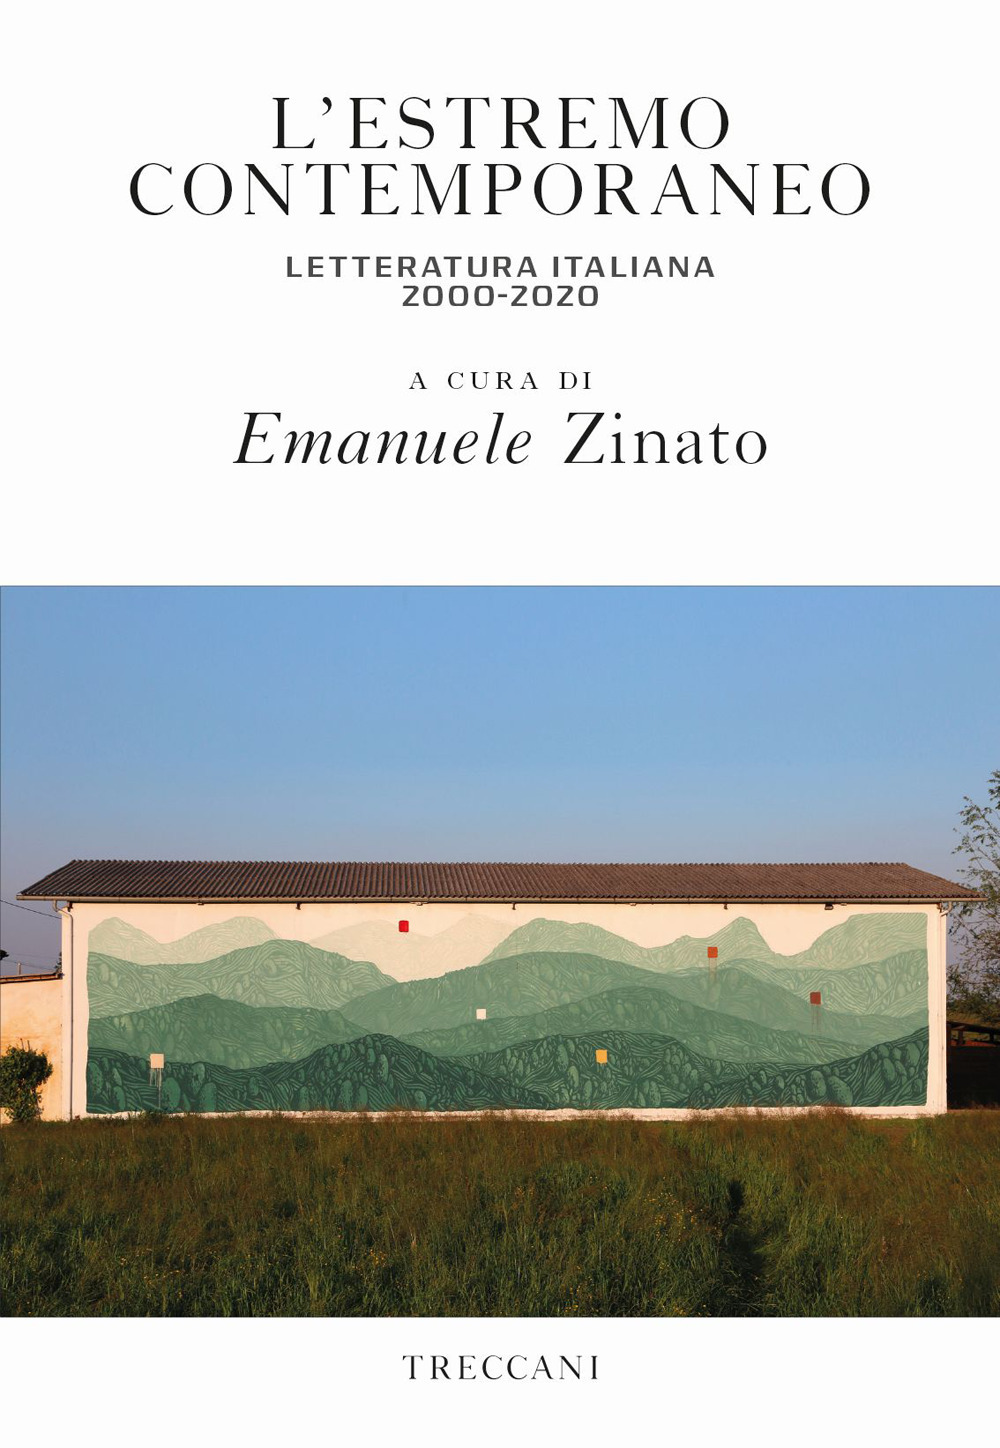 L'estremo contemporaneo letteratura italiana 2000-2020